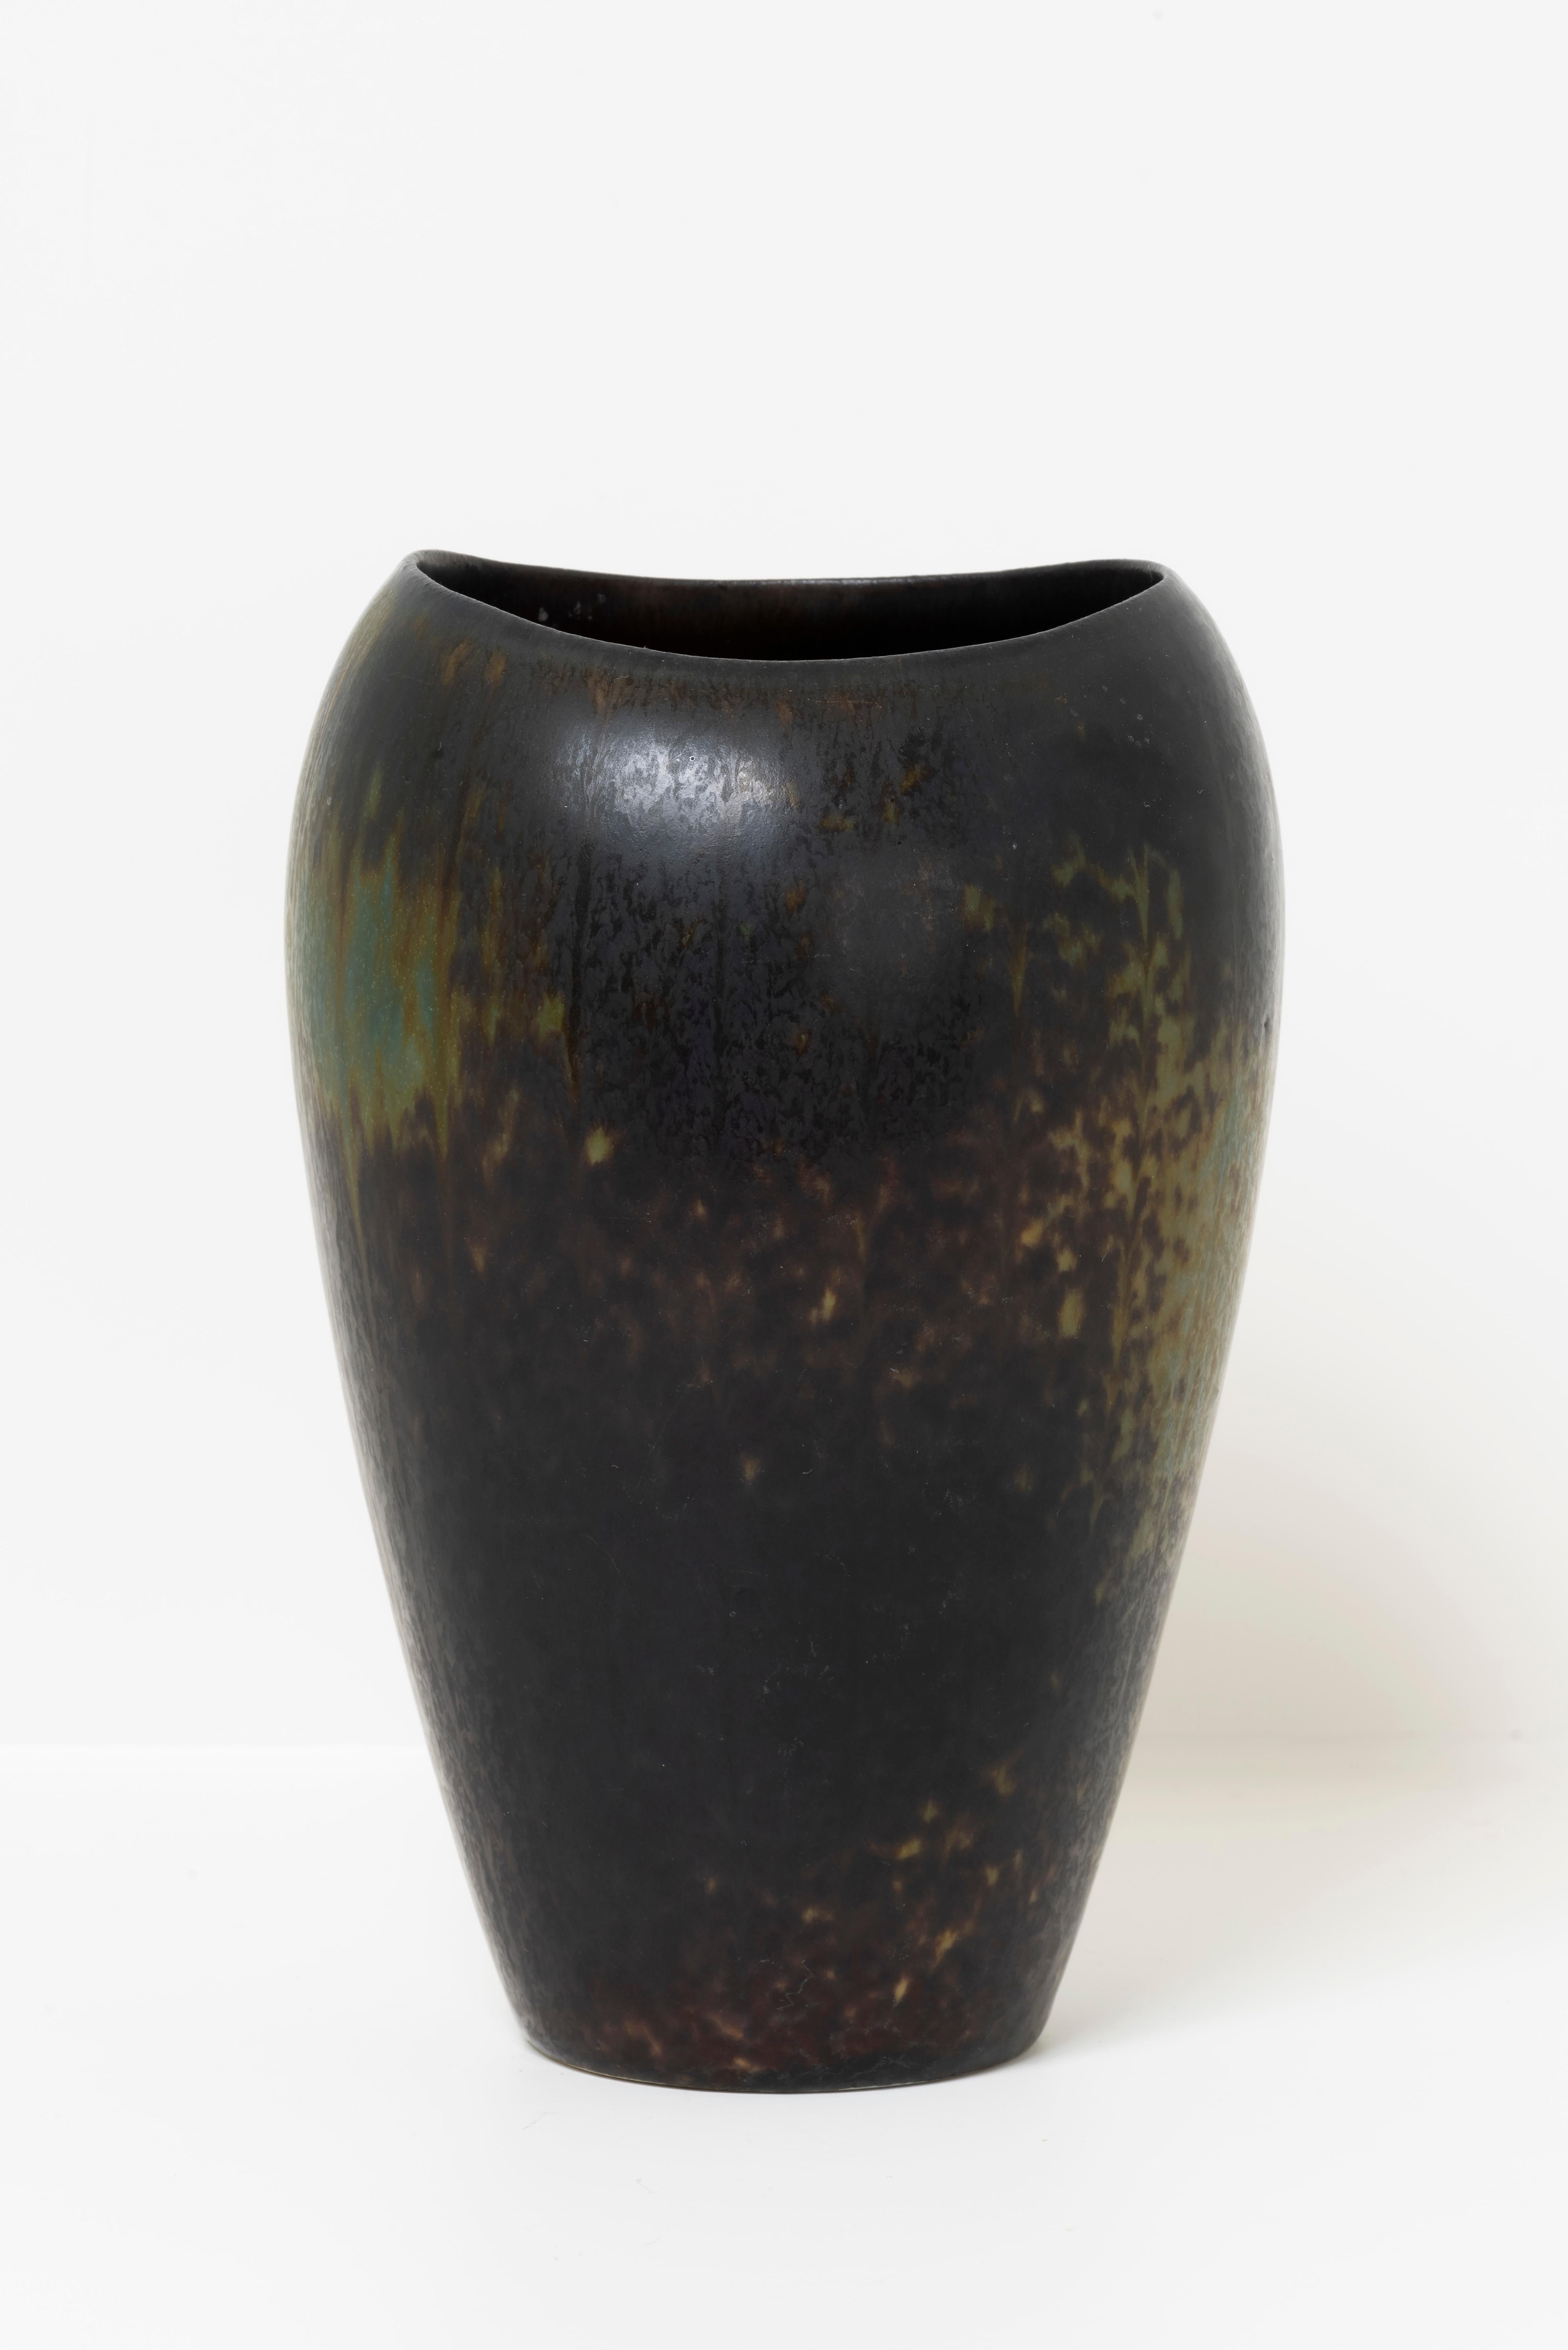 Gunnar Nylund war ein schwedischer Keramiker, dessen künstlerische Spuren in der Welt der Keramik unbestreitbar sind. In den 1960er Jahren schuf Nylund Stücke, die seinen kreativen Einfallsreichtum und sein Engagement für hochwertige Handwerkskunst